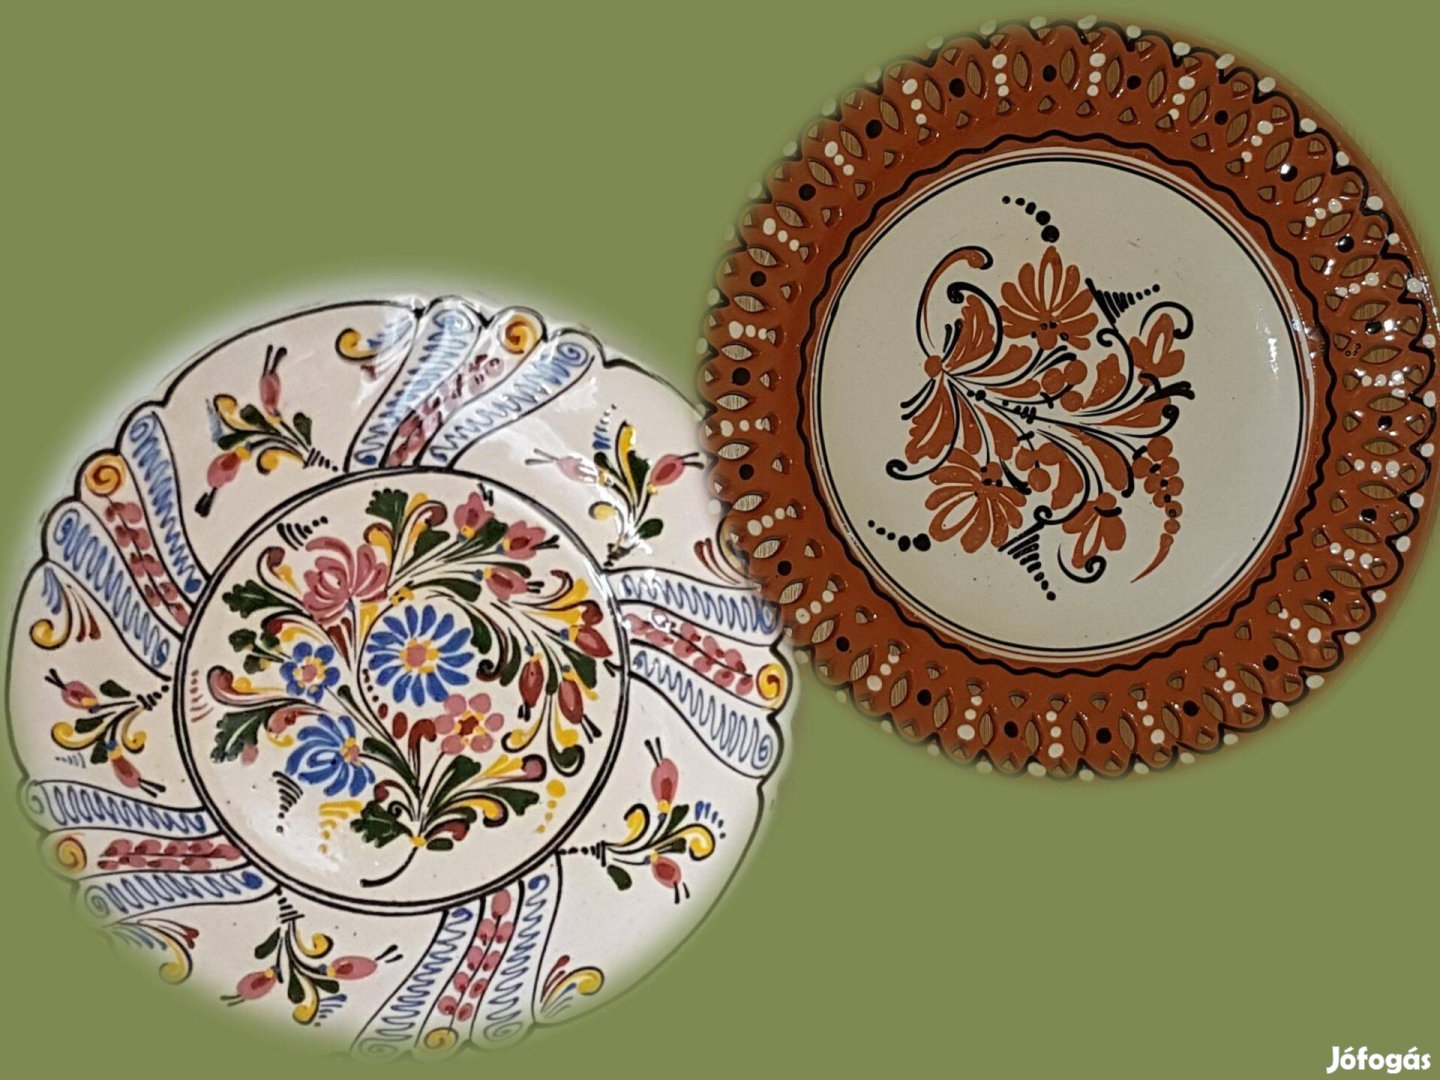 Két fantasztikus szépségű népművészeti tányér közös áron